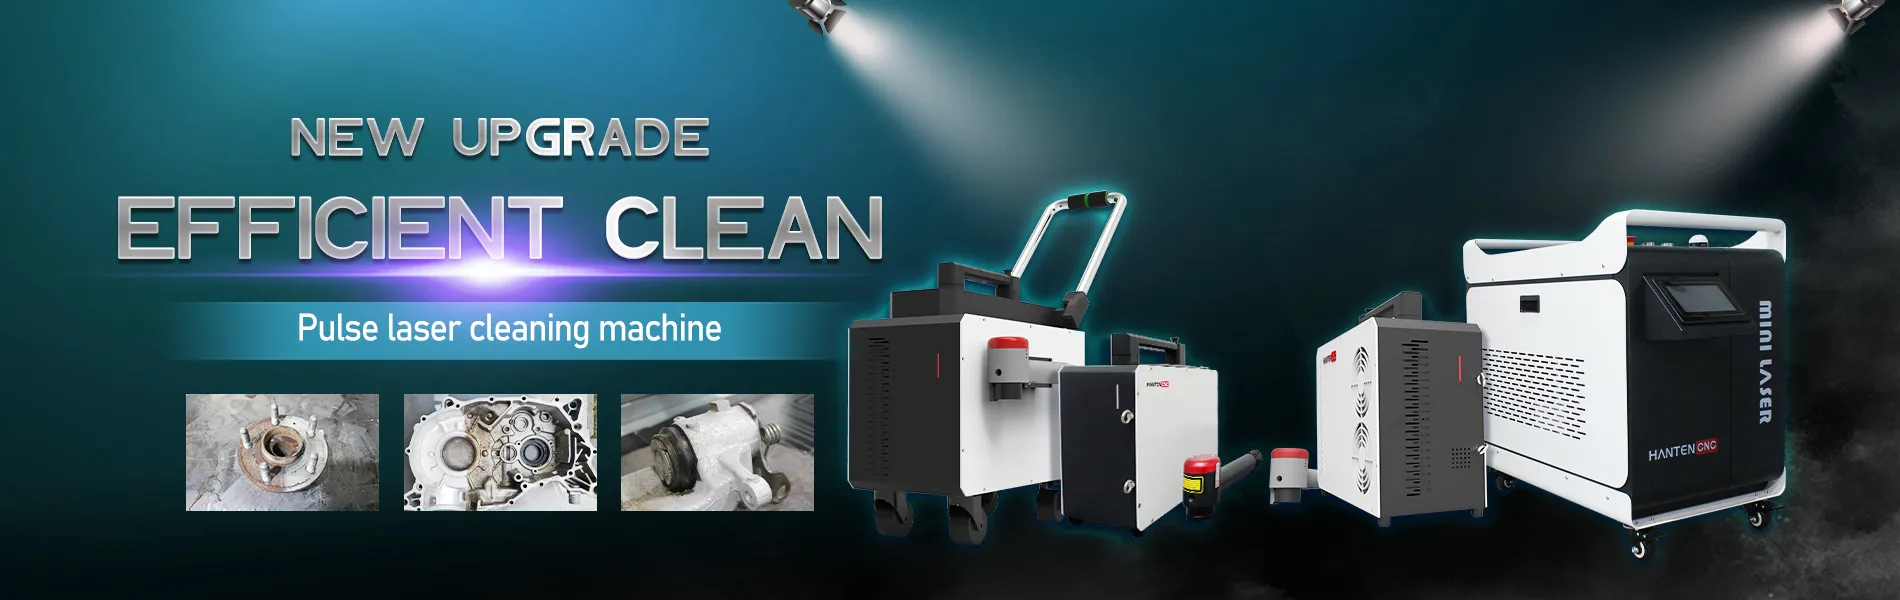 hantencnc laser cleaning machine